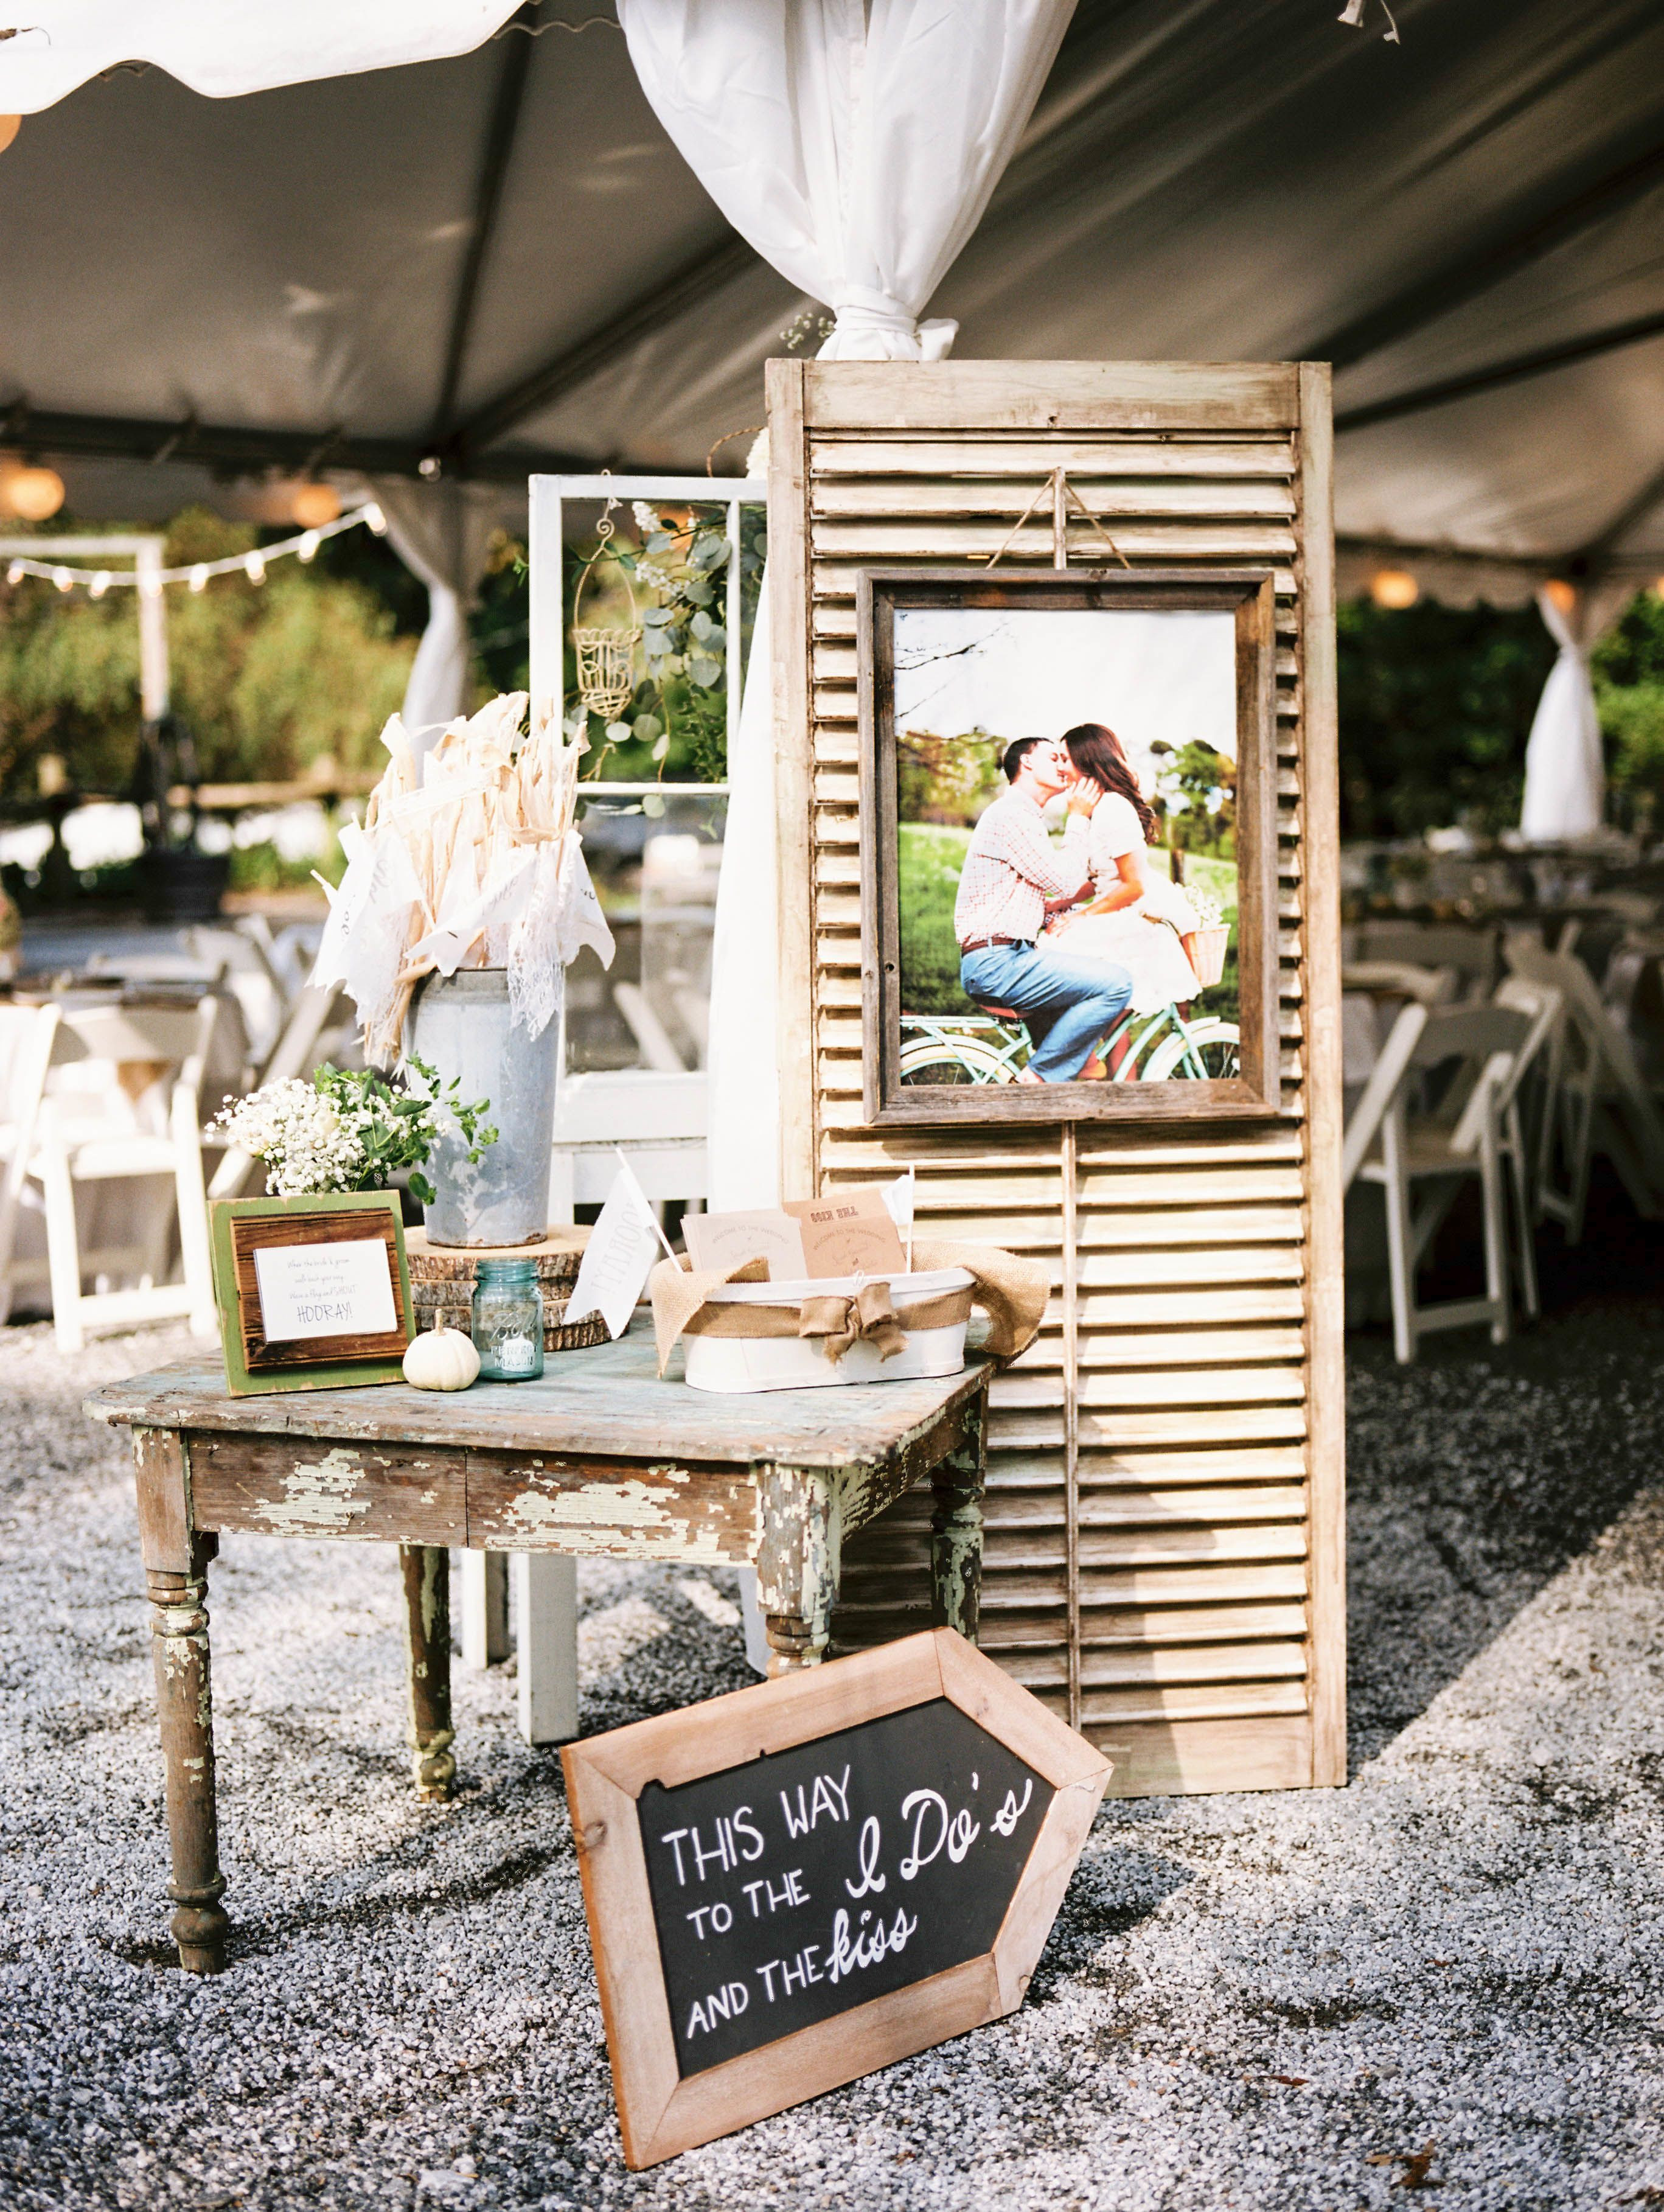 DIY Outdoor Wedding Decorations
 Rustic DIY Farm Reception Decor